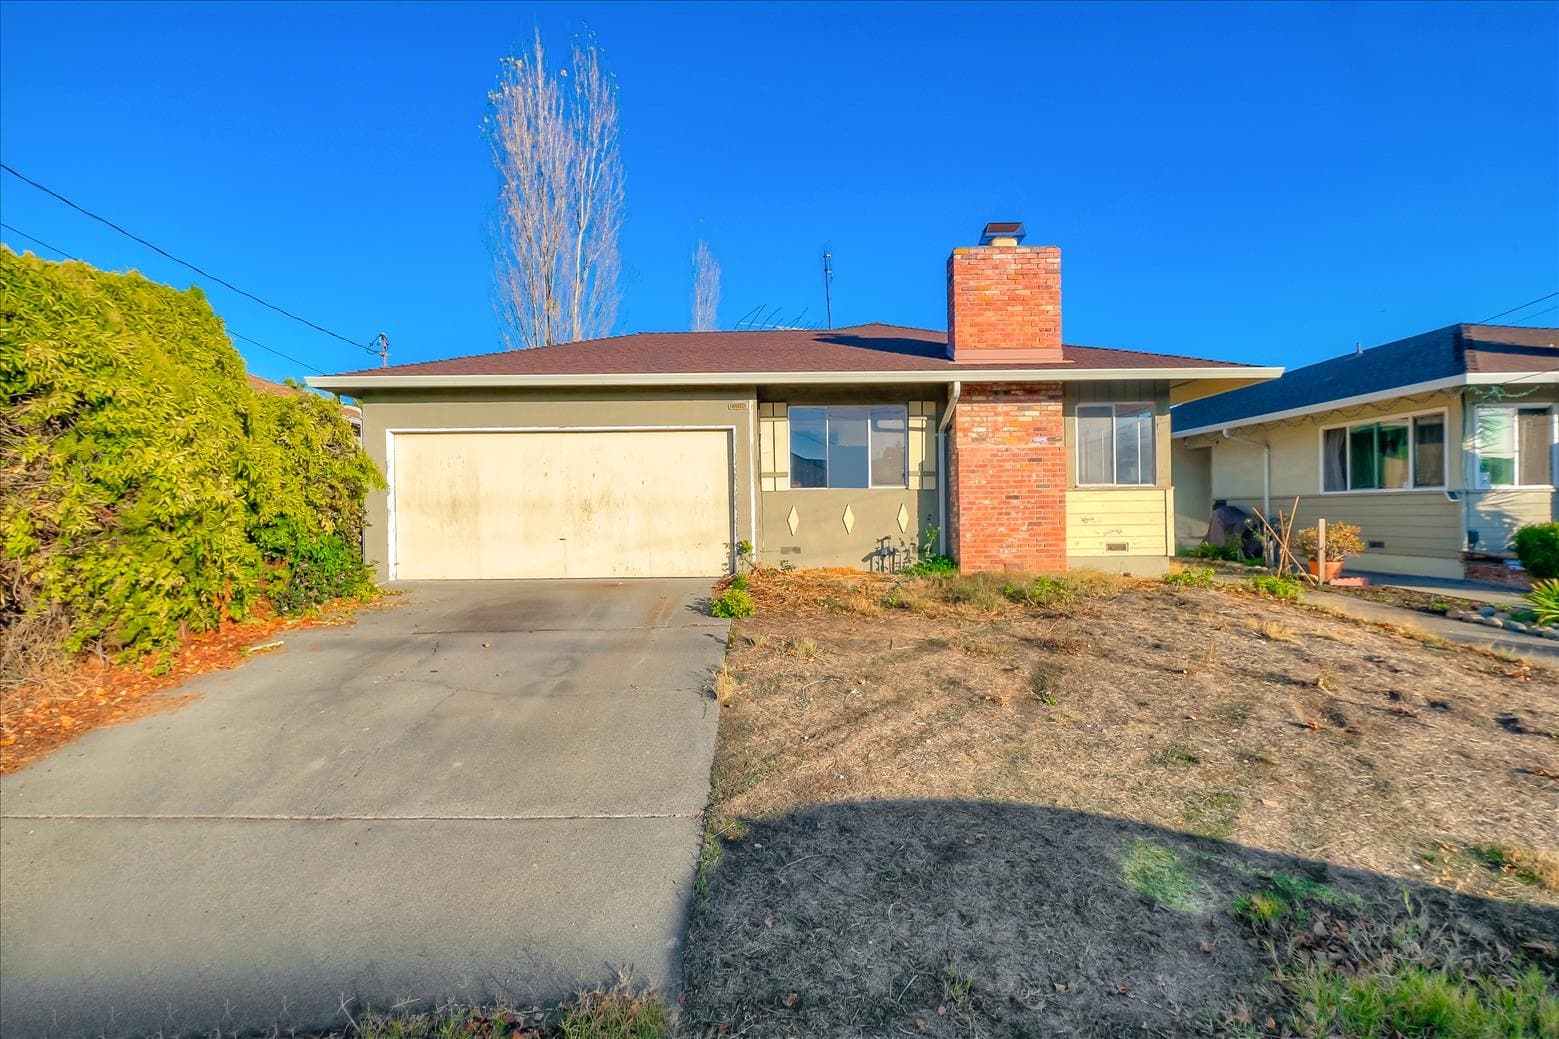 Sold by Dakota Dillion Real Estate - 20948 Ashfield Avenue – Castro Valley CA